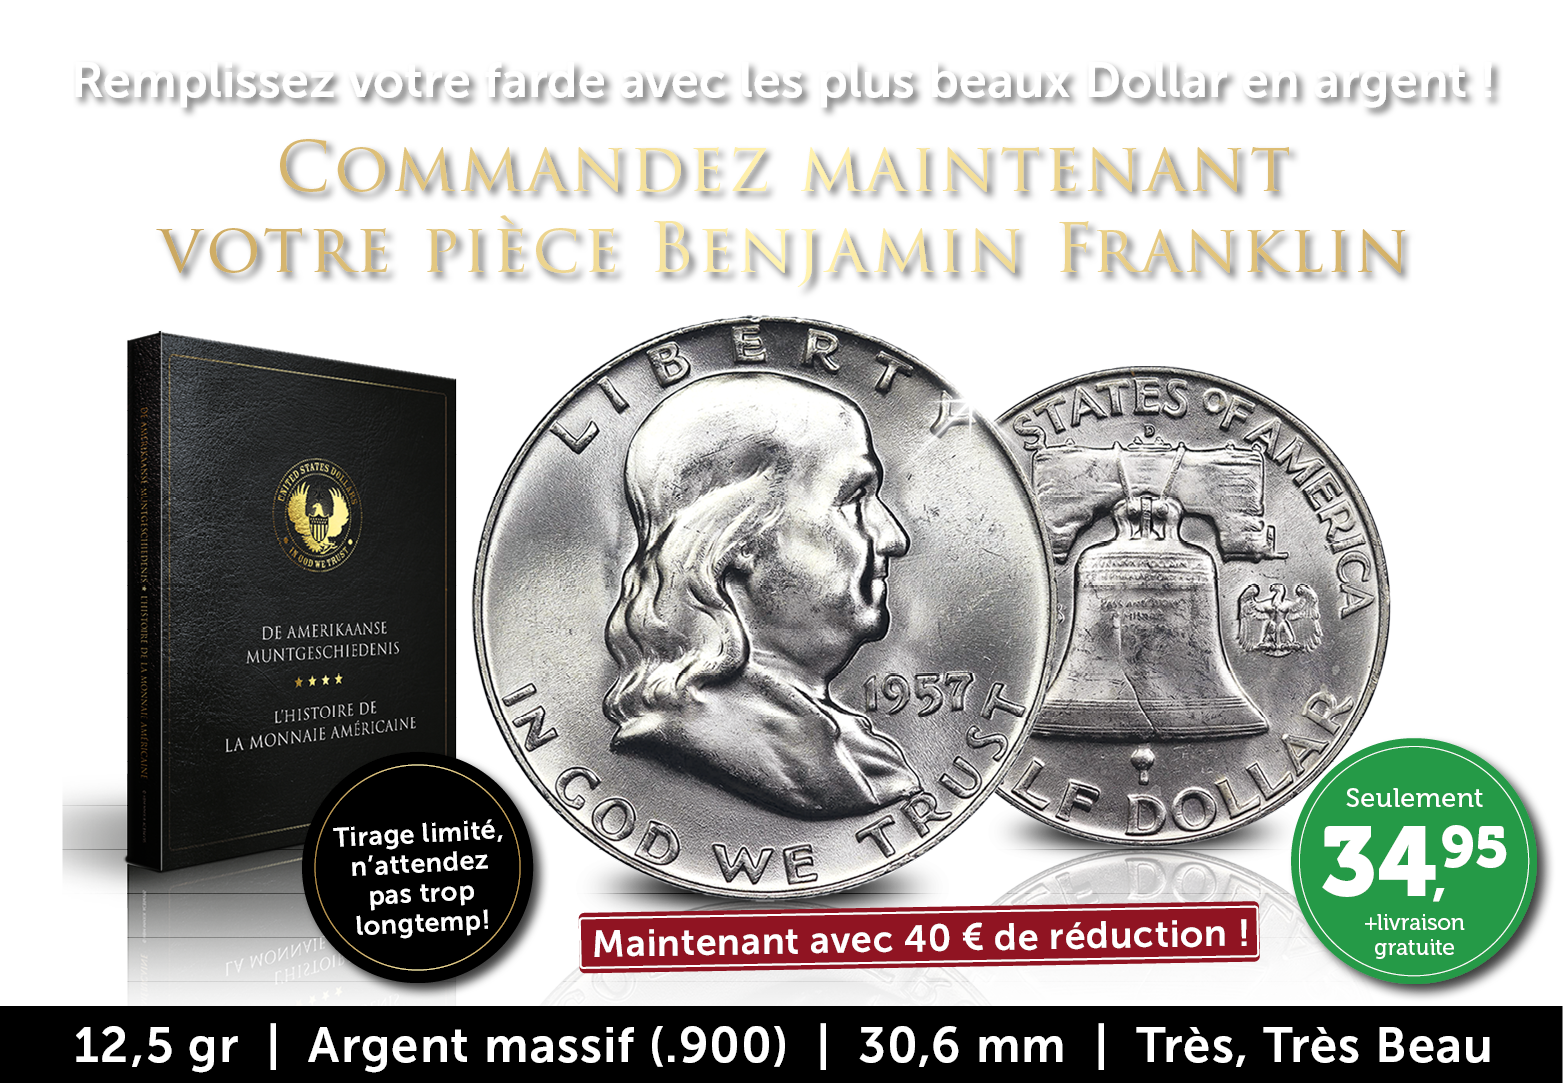 Dollar en argent iconique ! Benjamin Franklin